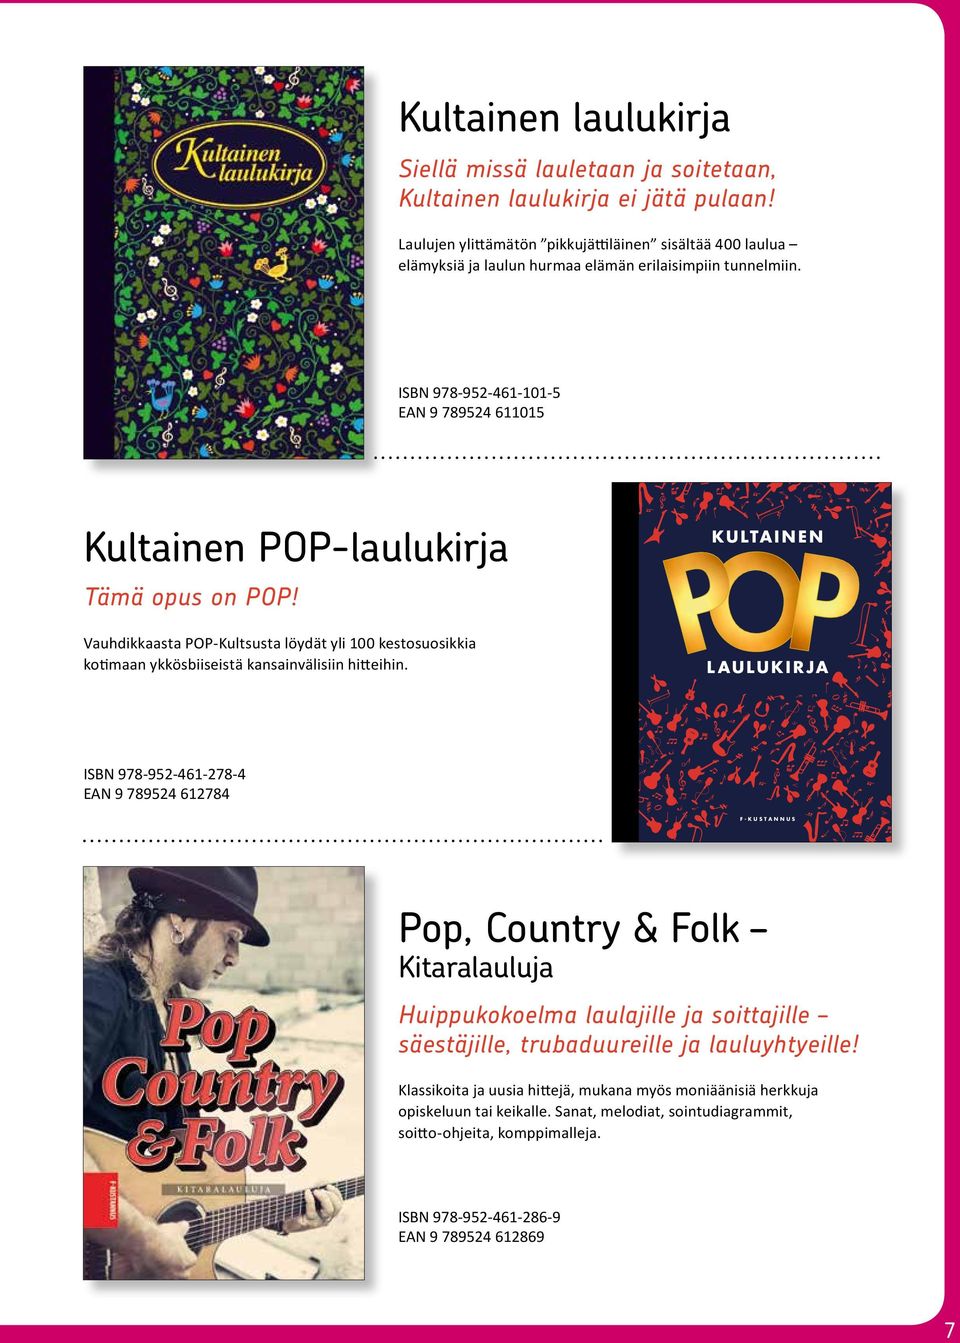 ISBN 978-952-461-101-5 EN 9 789524 611015 Kultainen POP-laulukirja Tämä opus on POP!